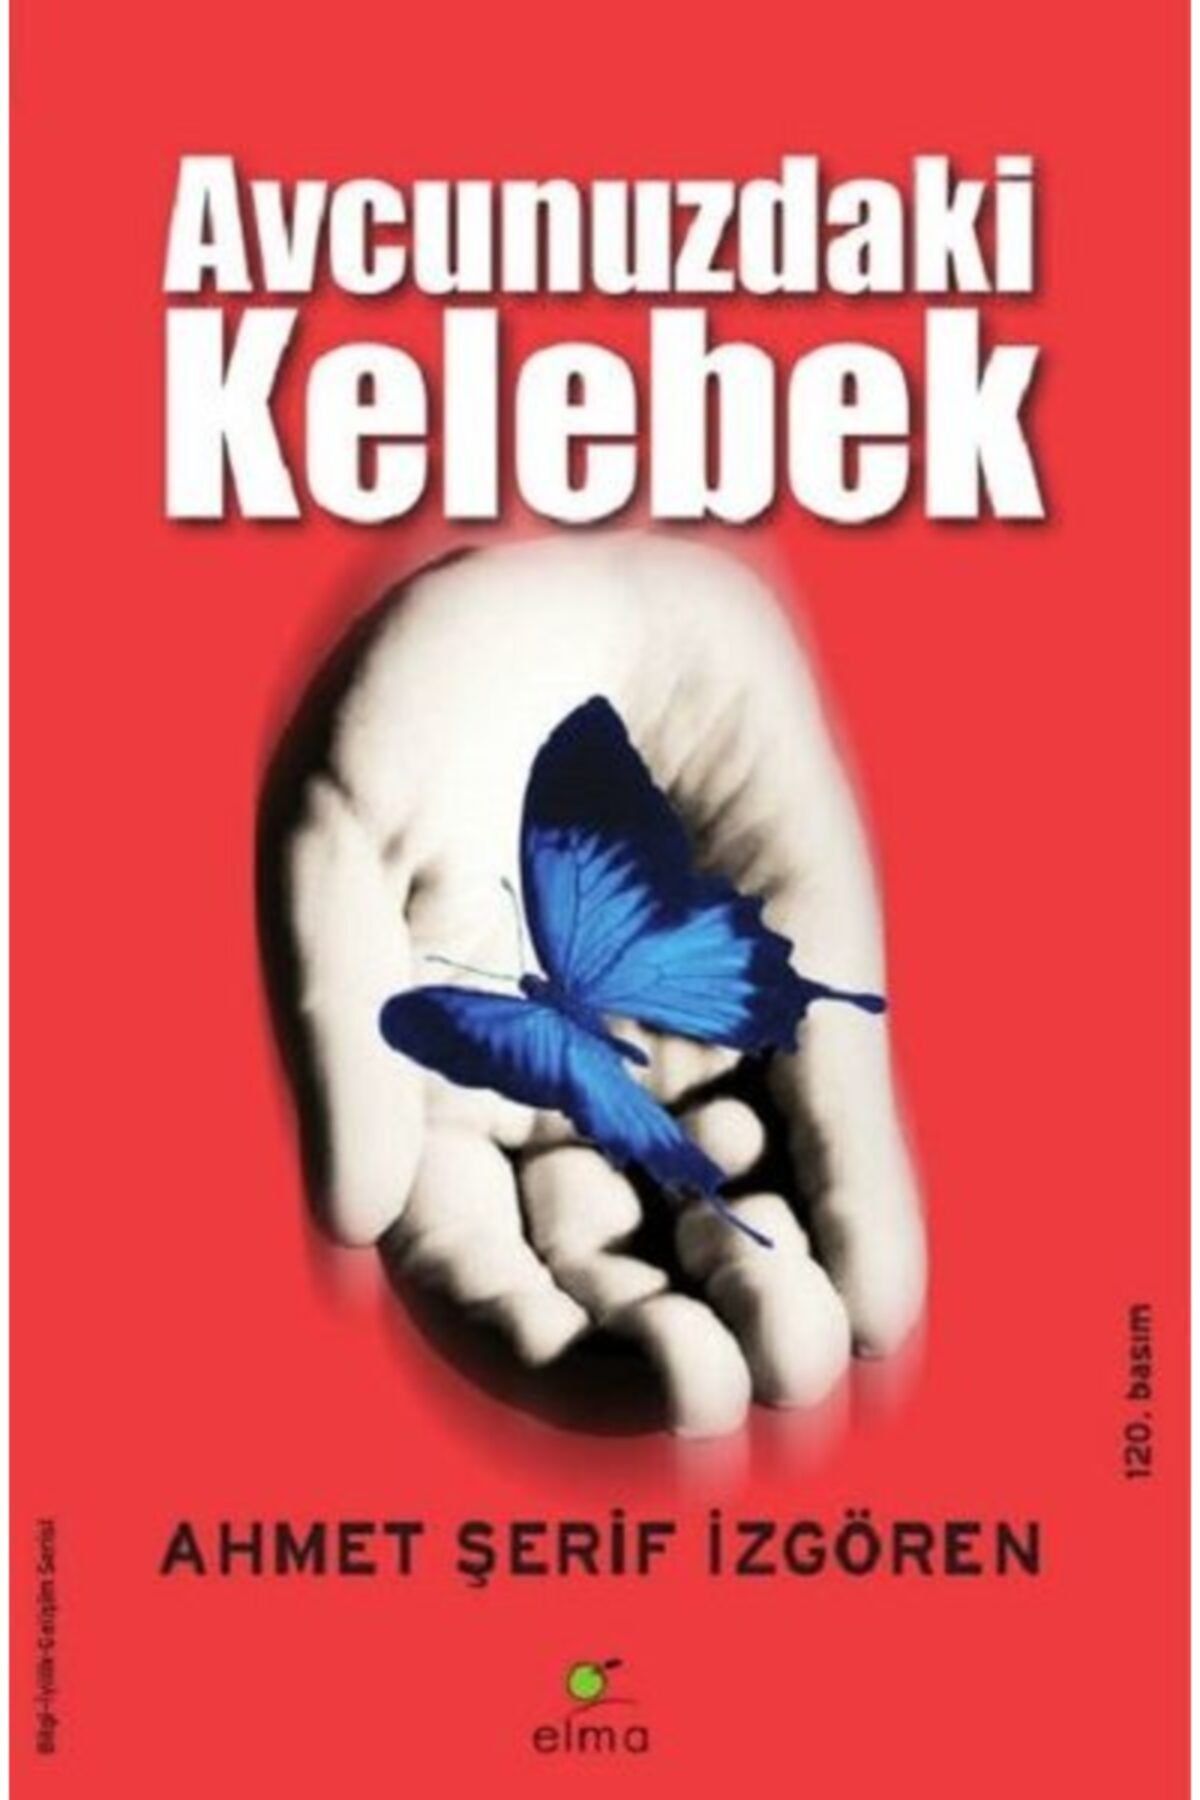 ELMA Yayınevi Avcunuzdaki Kelebek - Ahmet Şerif Izgören